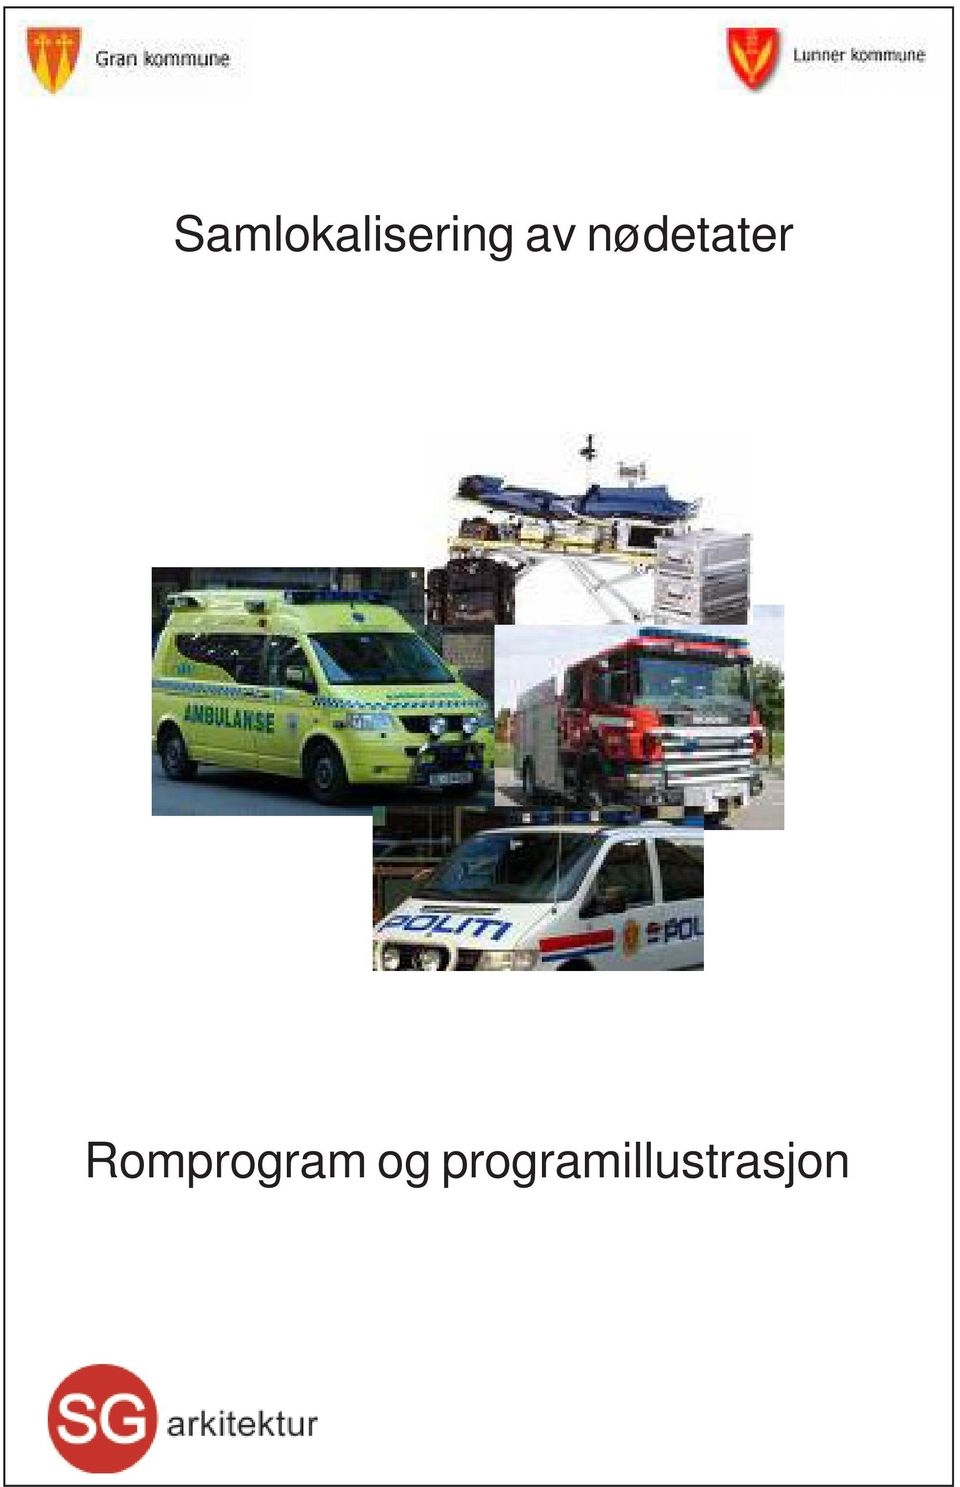 Romprogram og